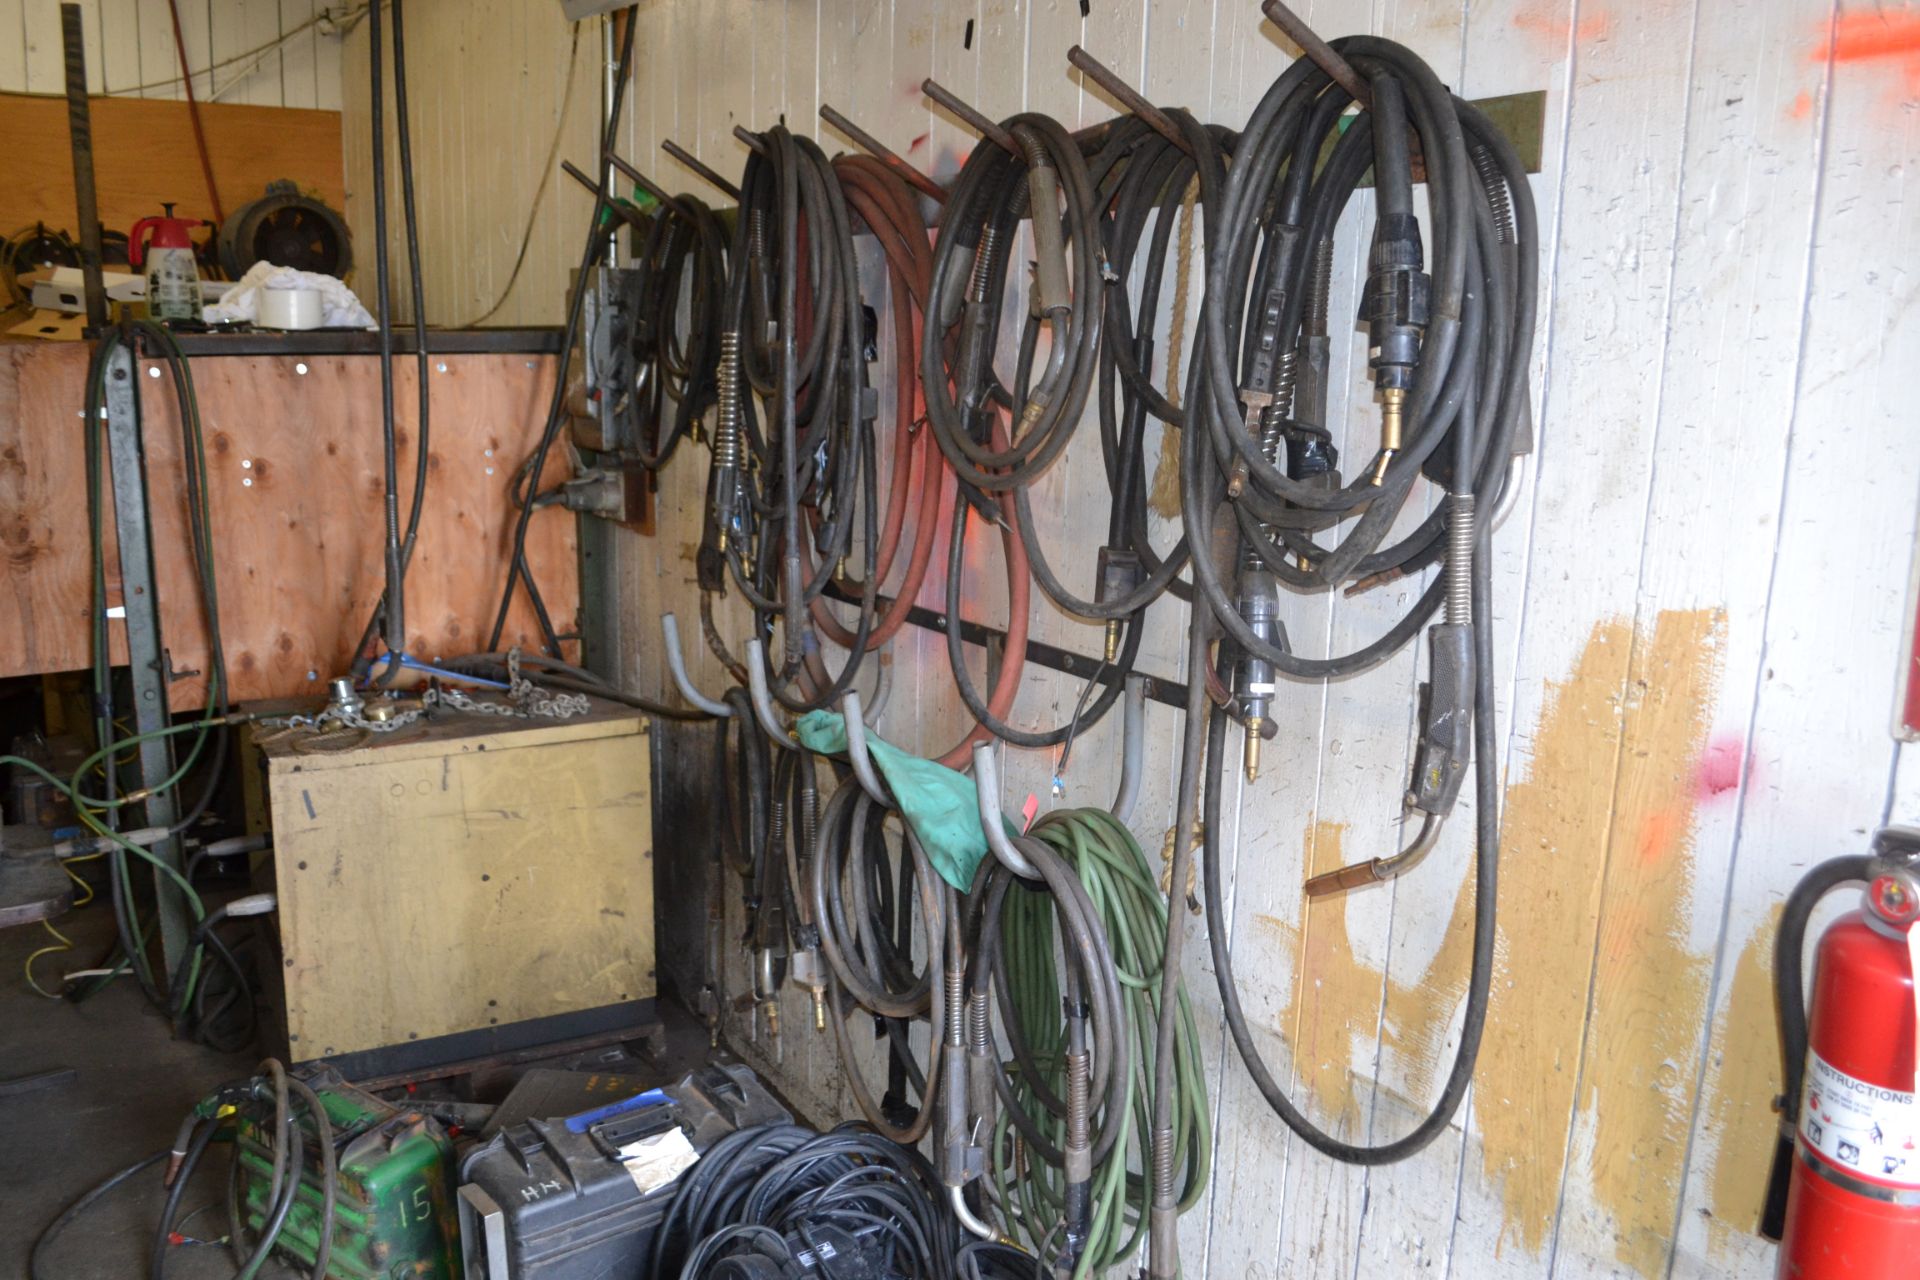 contents of welding room (repair room supplies)